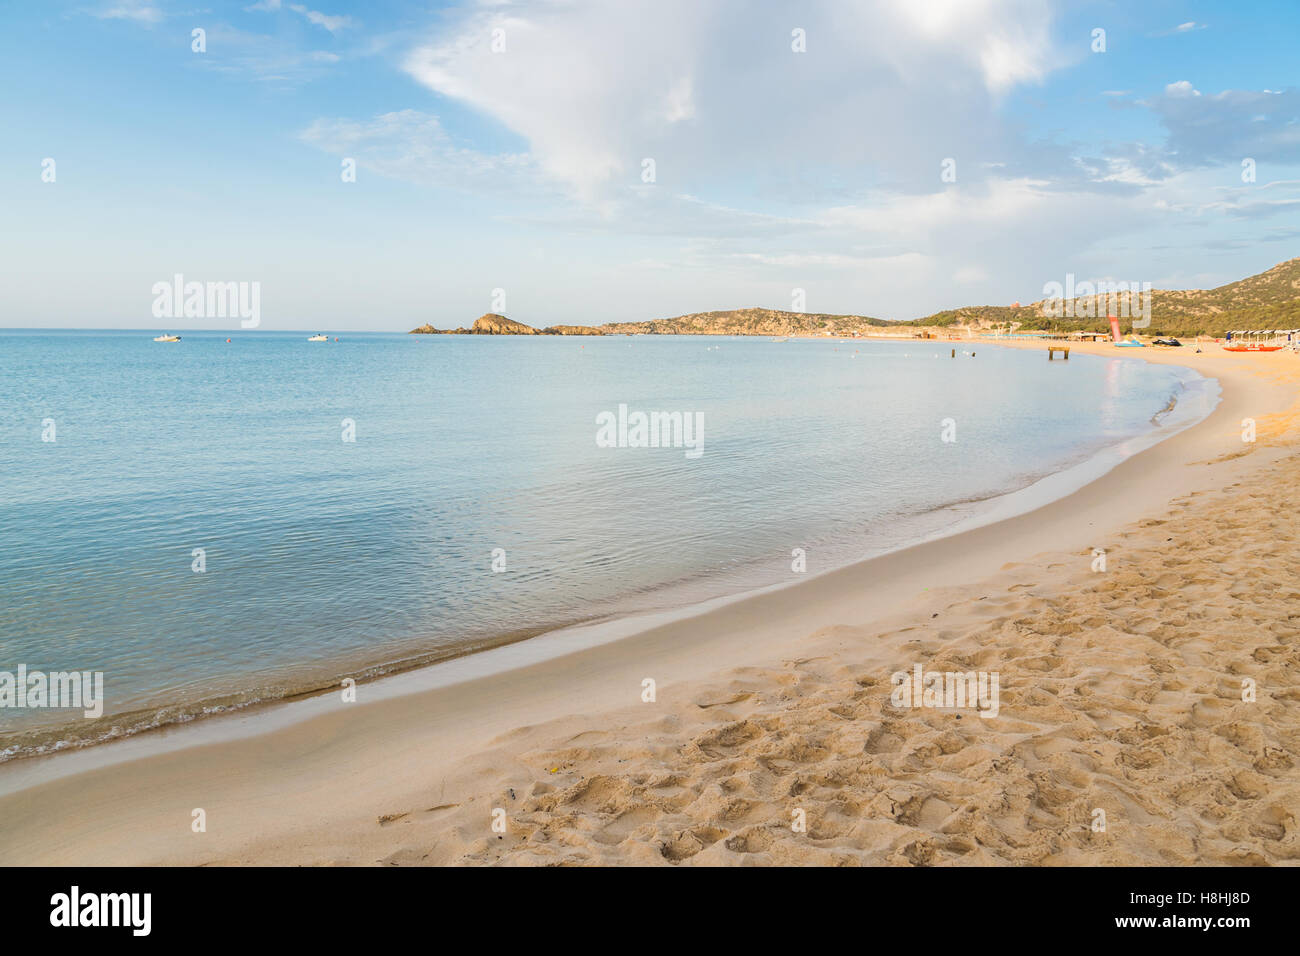 Il mare e le spiagge incontaminate di Chia, l'isola di Sardegna, Italia. Foto Stock